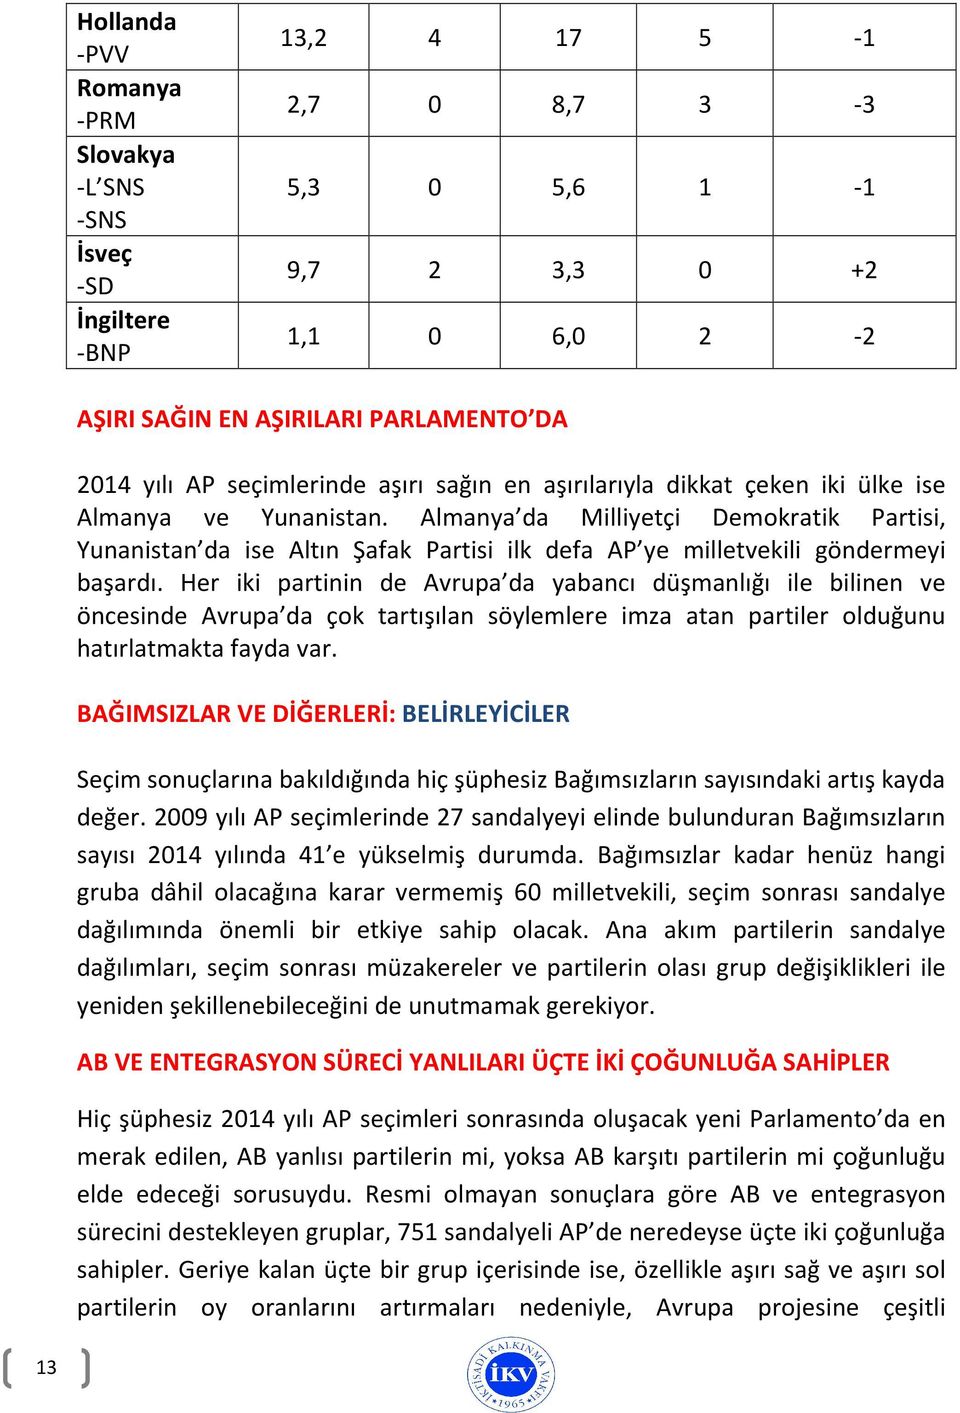 Almanya da Milliyetçi Demokratik Partisi, Yunanistan da ise Altın Şafak Partisi ilk defa AP ye milletvekili göndermeyi başardı.